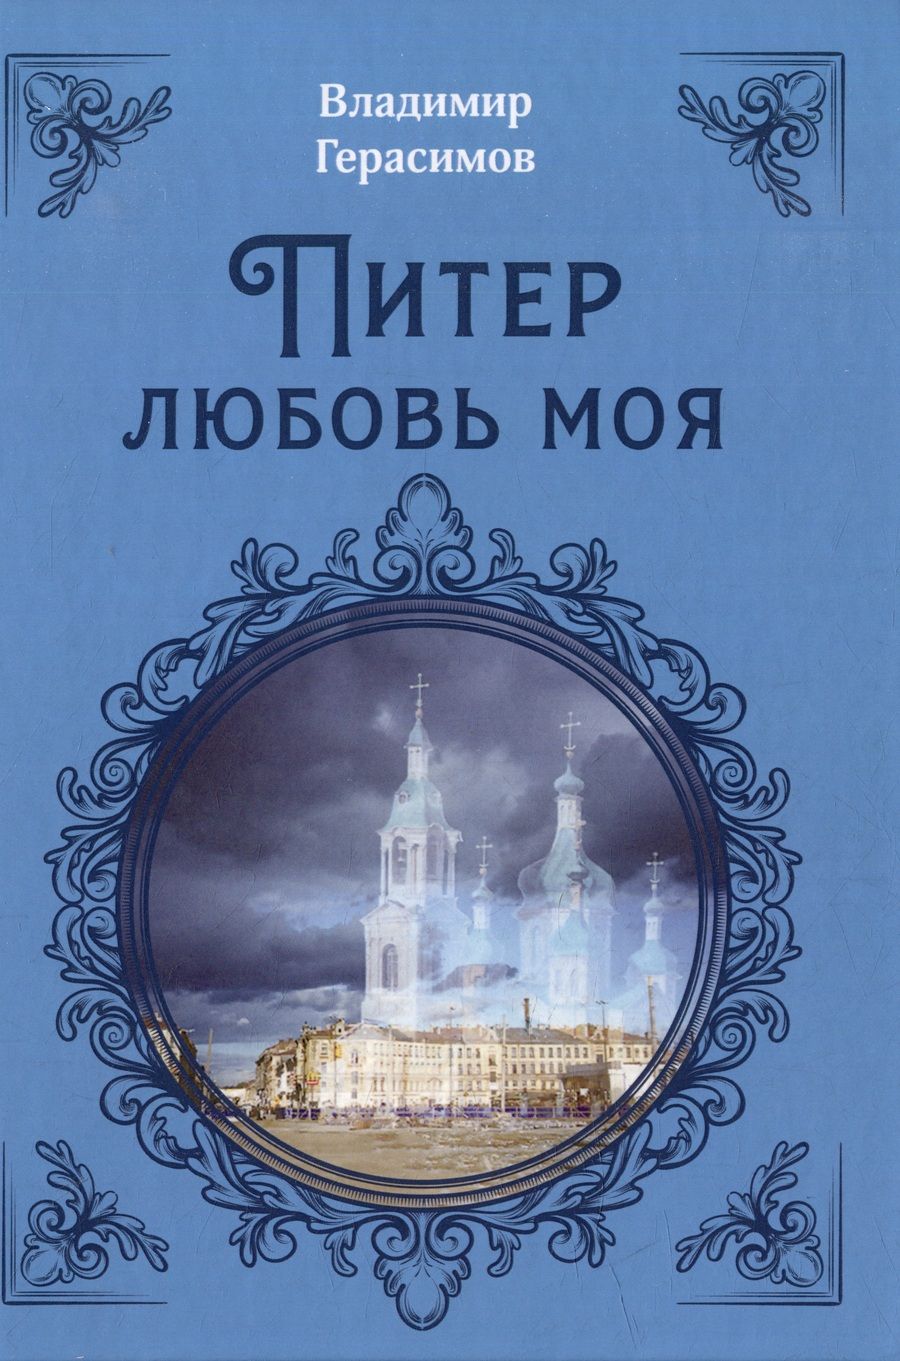 Обложка книги "Герасимов: Питер Любовь Моя"